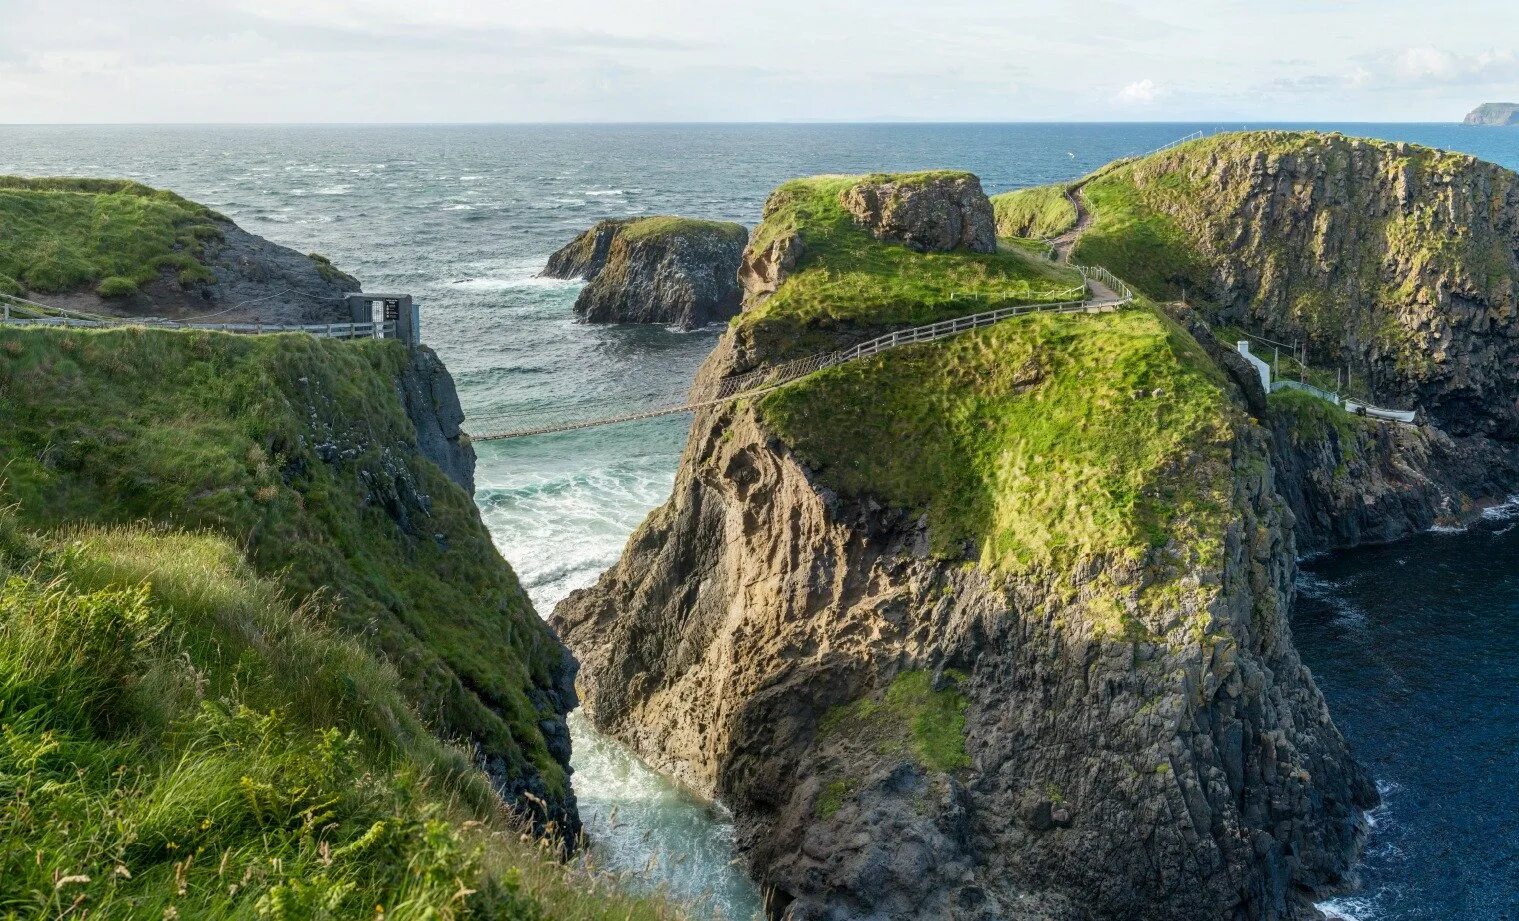 Ireland area. Изумрудный остров Ирландия. Рельеф Ирландии. Холливуд Ирландия. Ирландия живые острова.